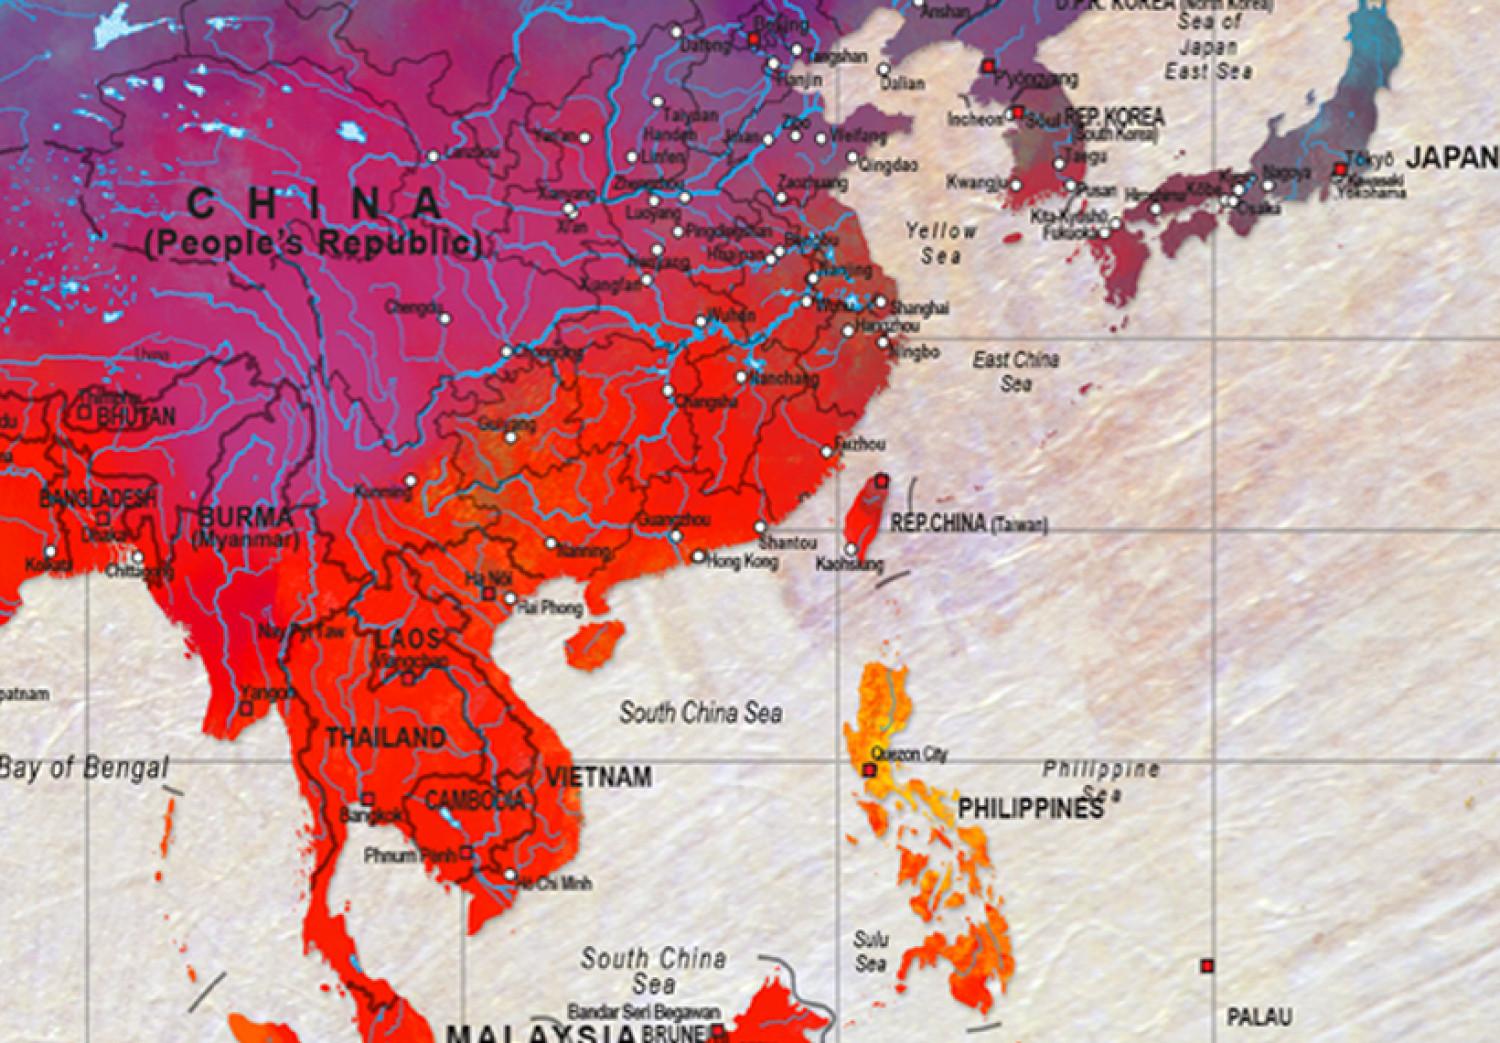 Cuadro Continentes en Color (3 partes) - Mapa Mundial en Tonos del Arcoíris